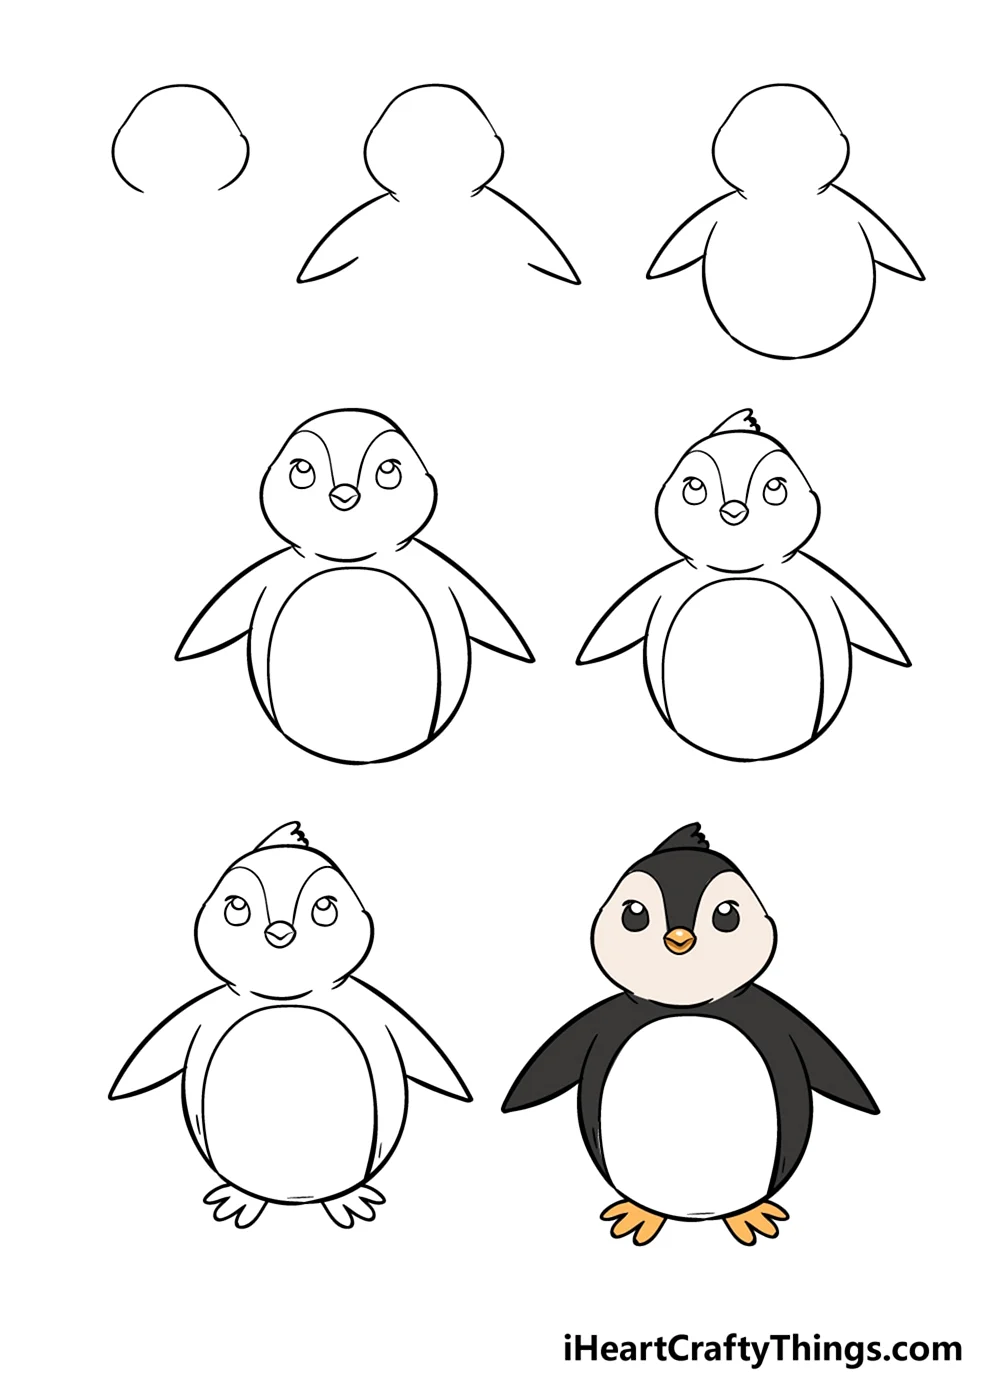 Пингвин рисунок для детей поэтапно. Для срисовки